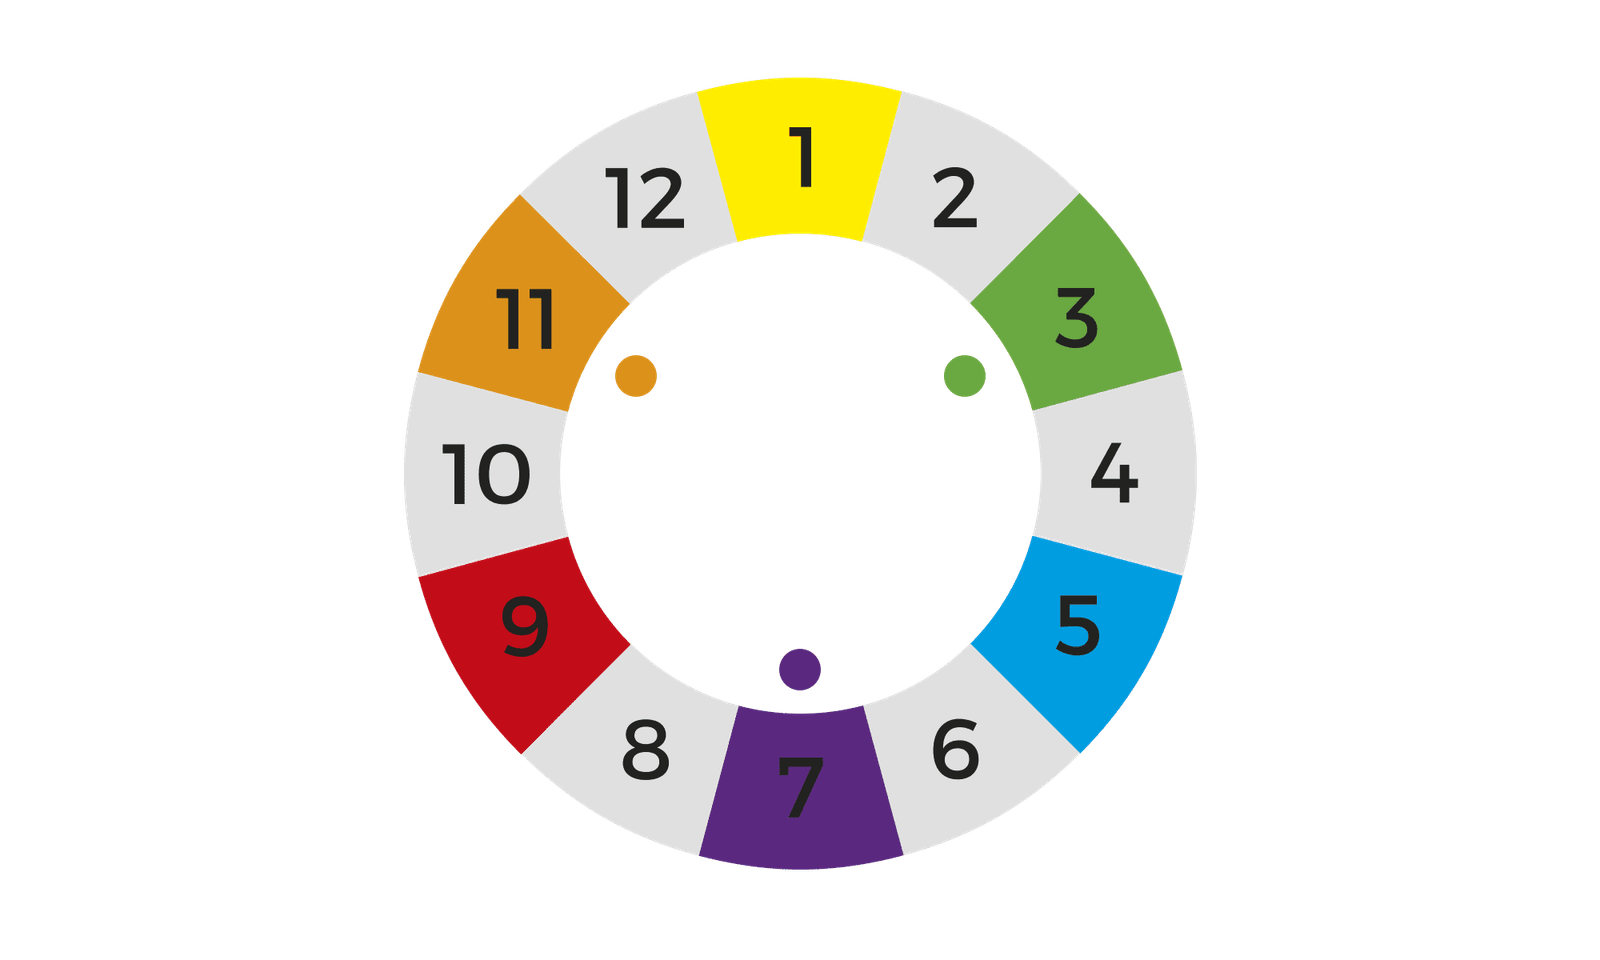 Exemplo de como criar um círculo cromático: posicionamento das cores secundárias